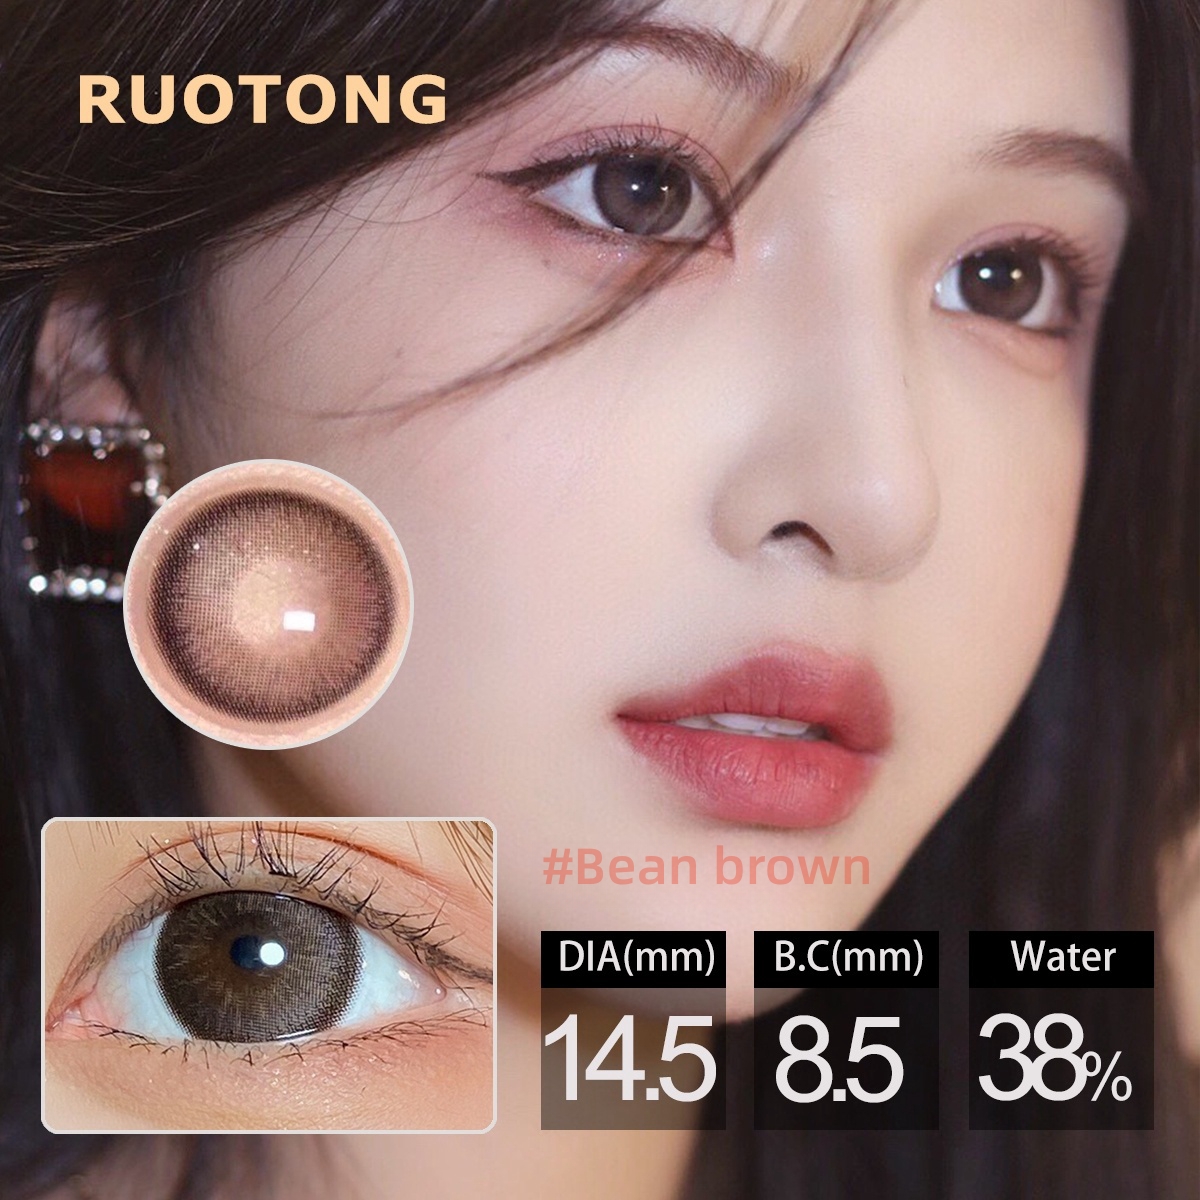 Ruotong丨Natural丨14.5mm 1pair Yearly